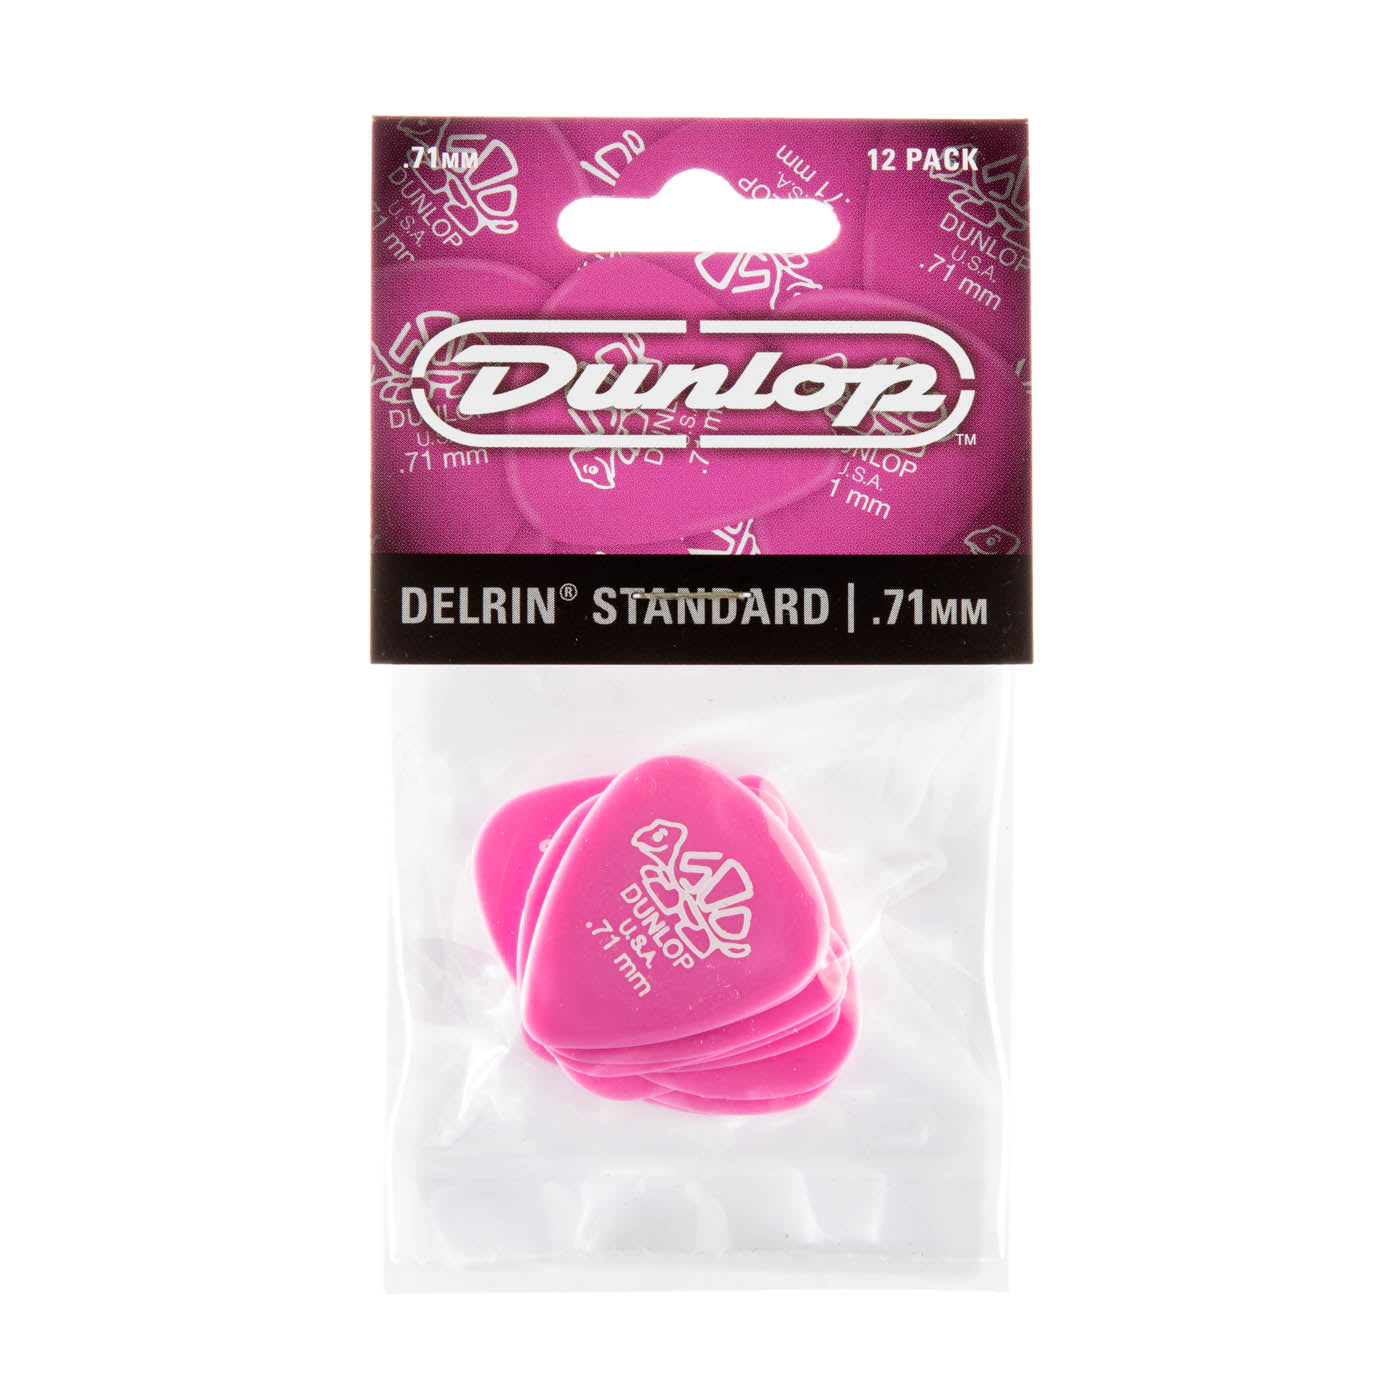 Dunlop 0.71mm Delrin 500 Guitar Pick (12/Pack)